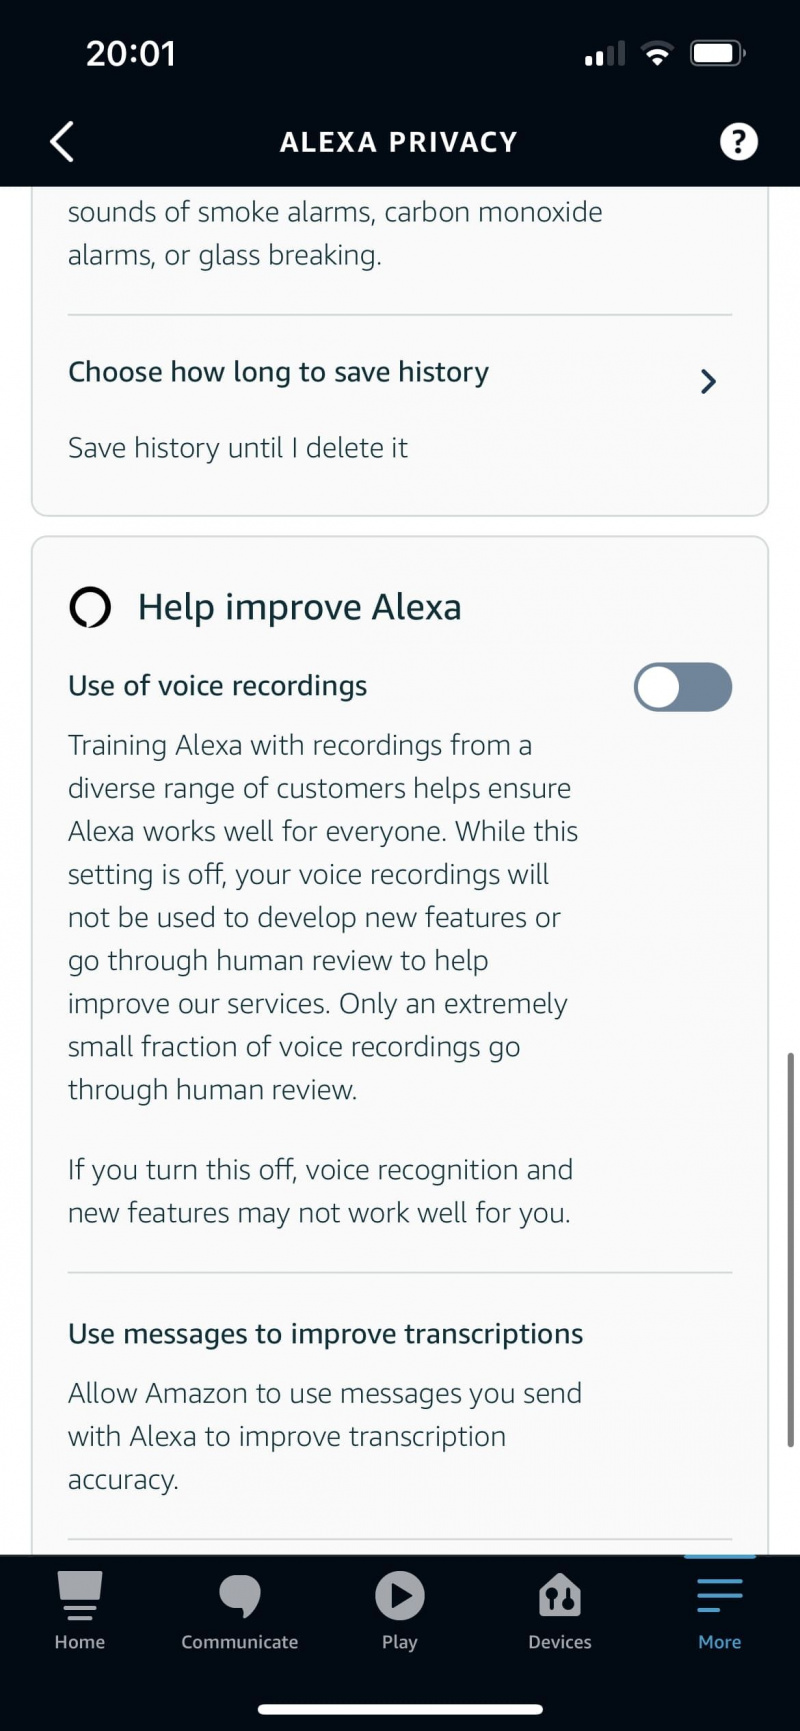   Alexa-appen hjälper till att förbättra Alexa